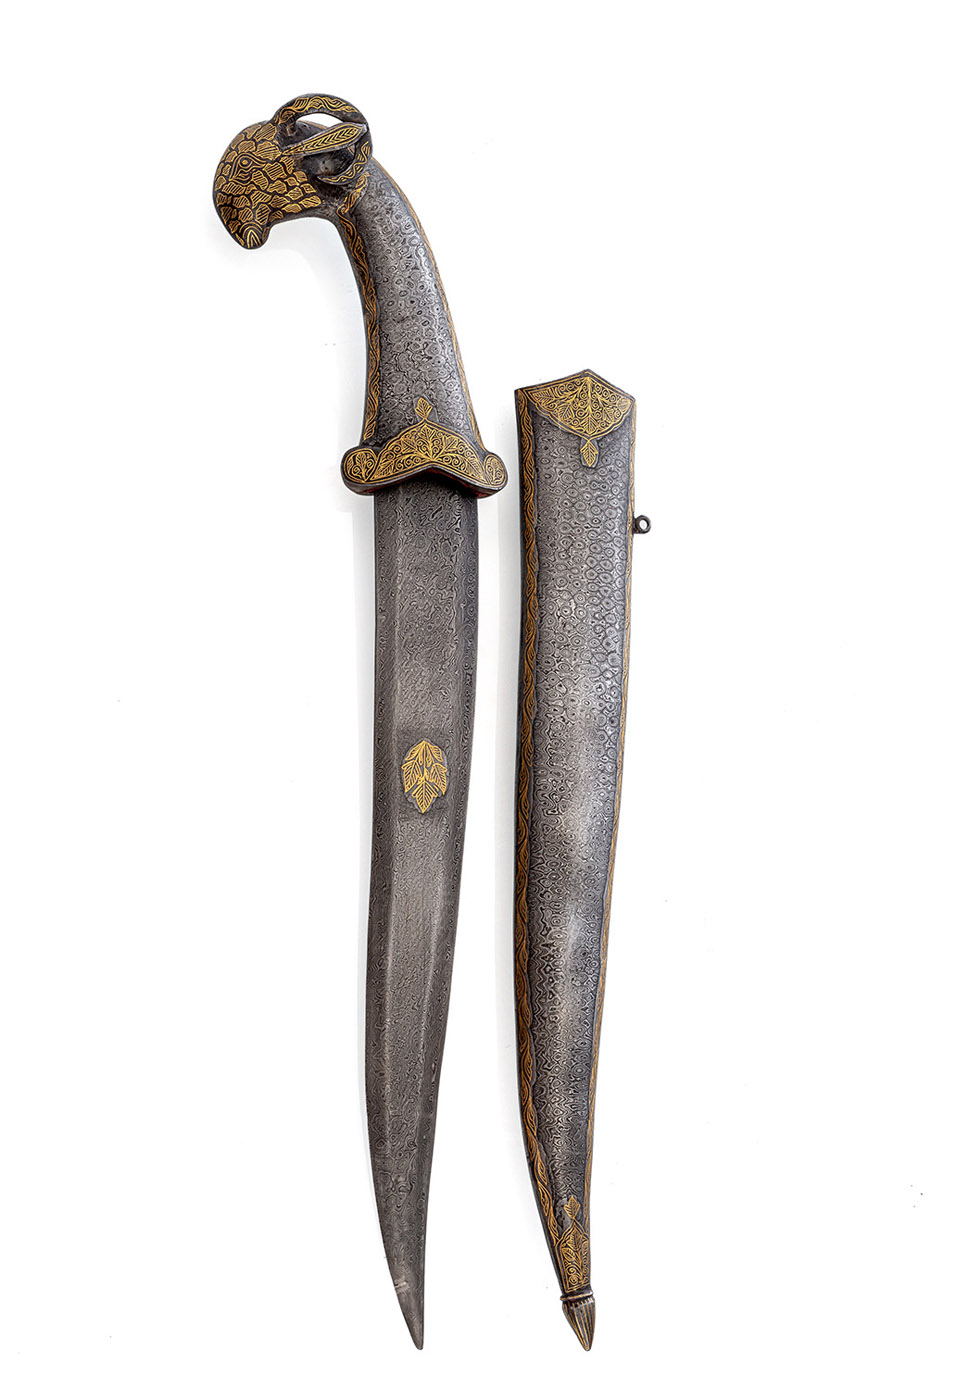 <b>'Khanjar' aus Stahl mit Goldeinlagen und Griff in Form eines Widderkopfes</b>